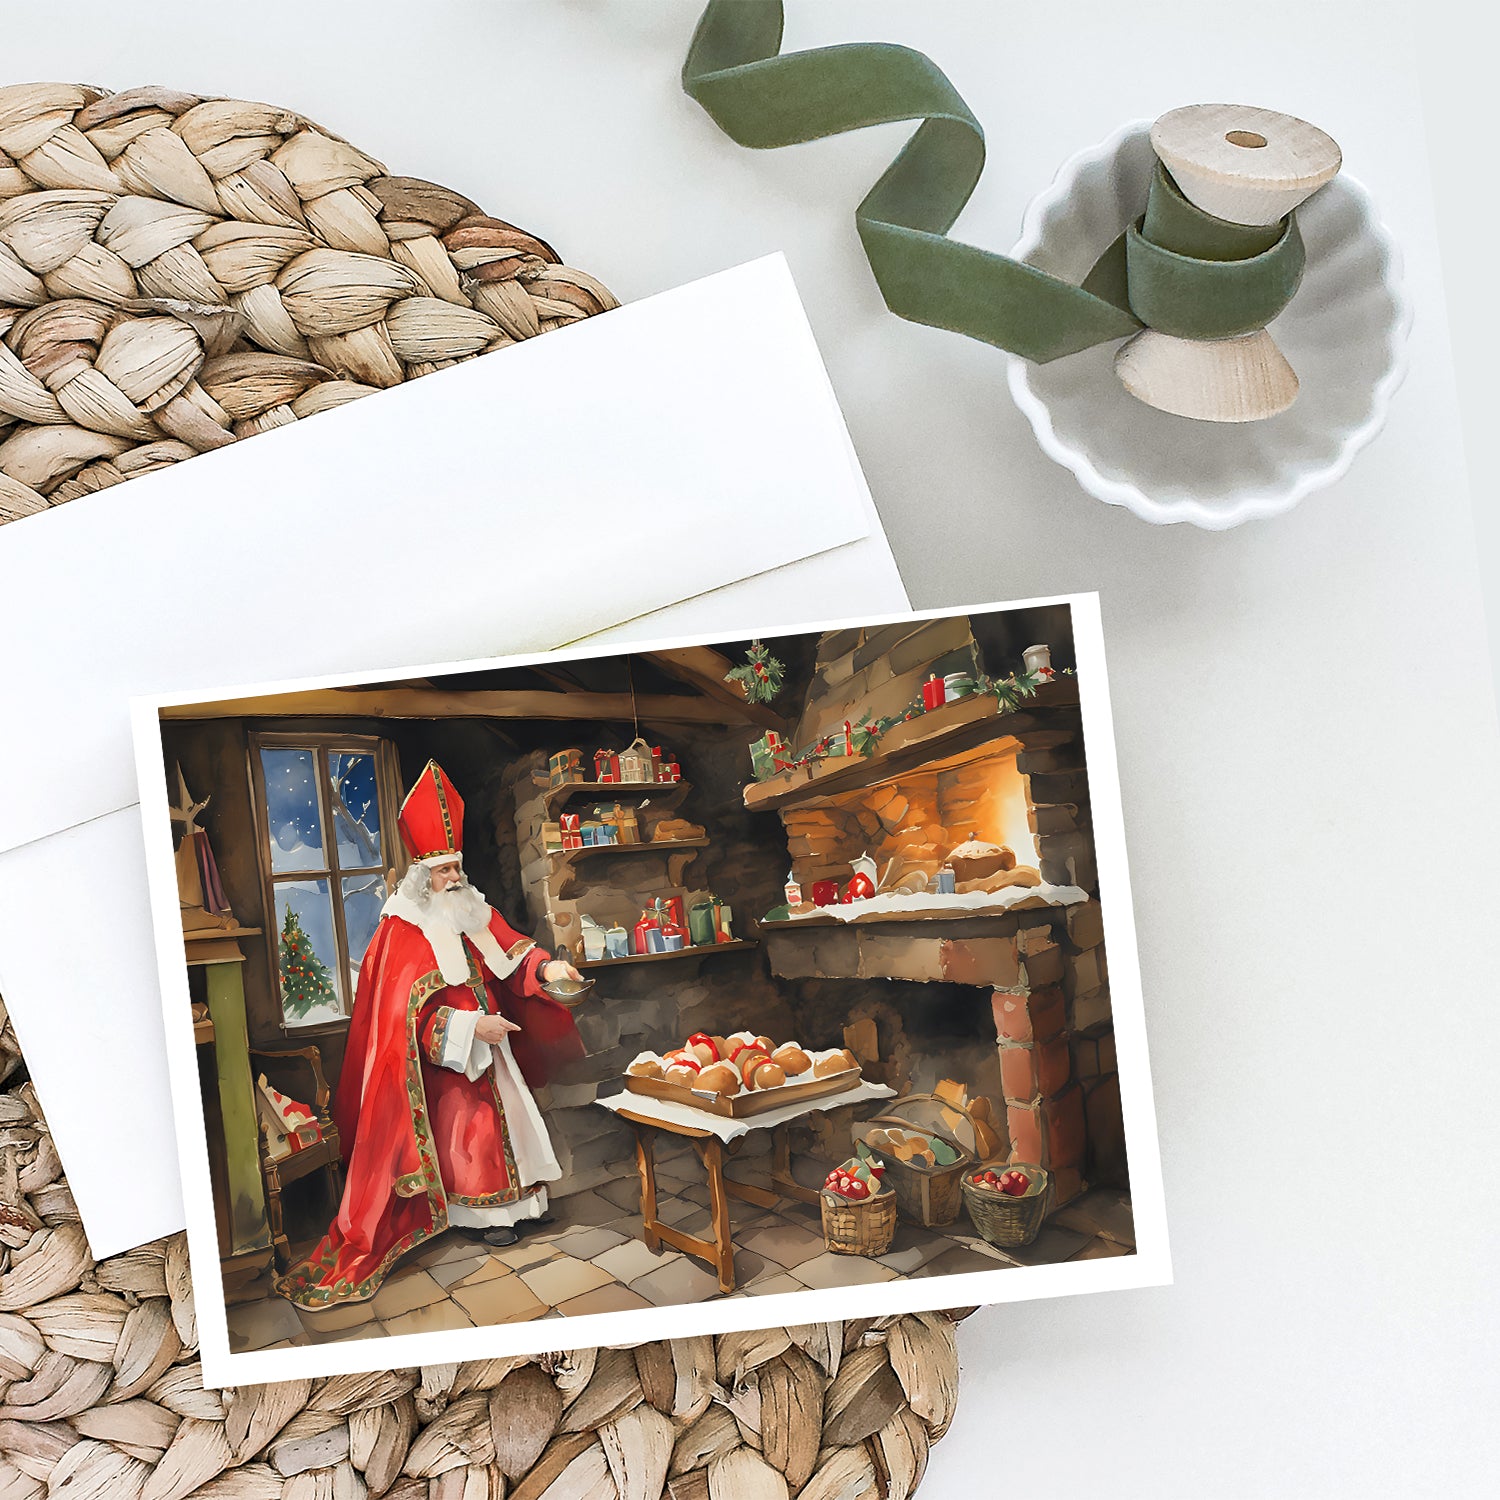 Buy this Cookies with Santa Claus Sinterklaas Greeting Cards Pack of 8